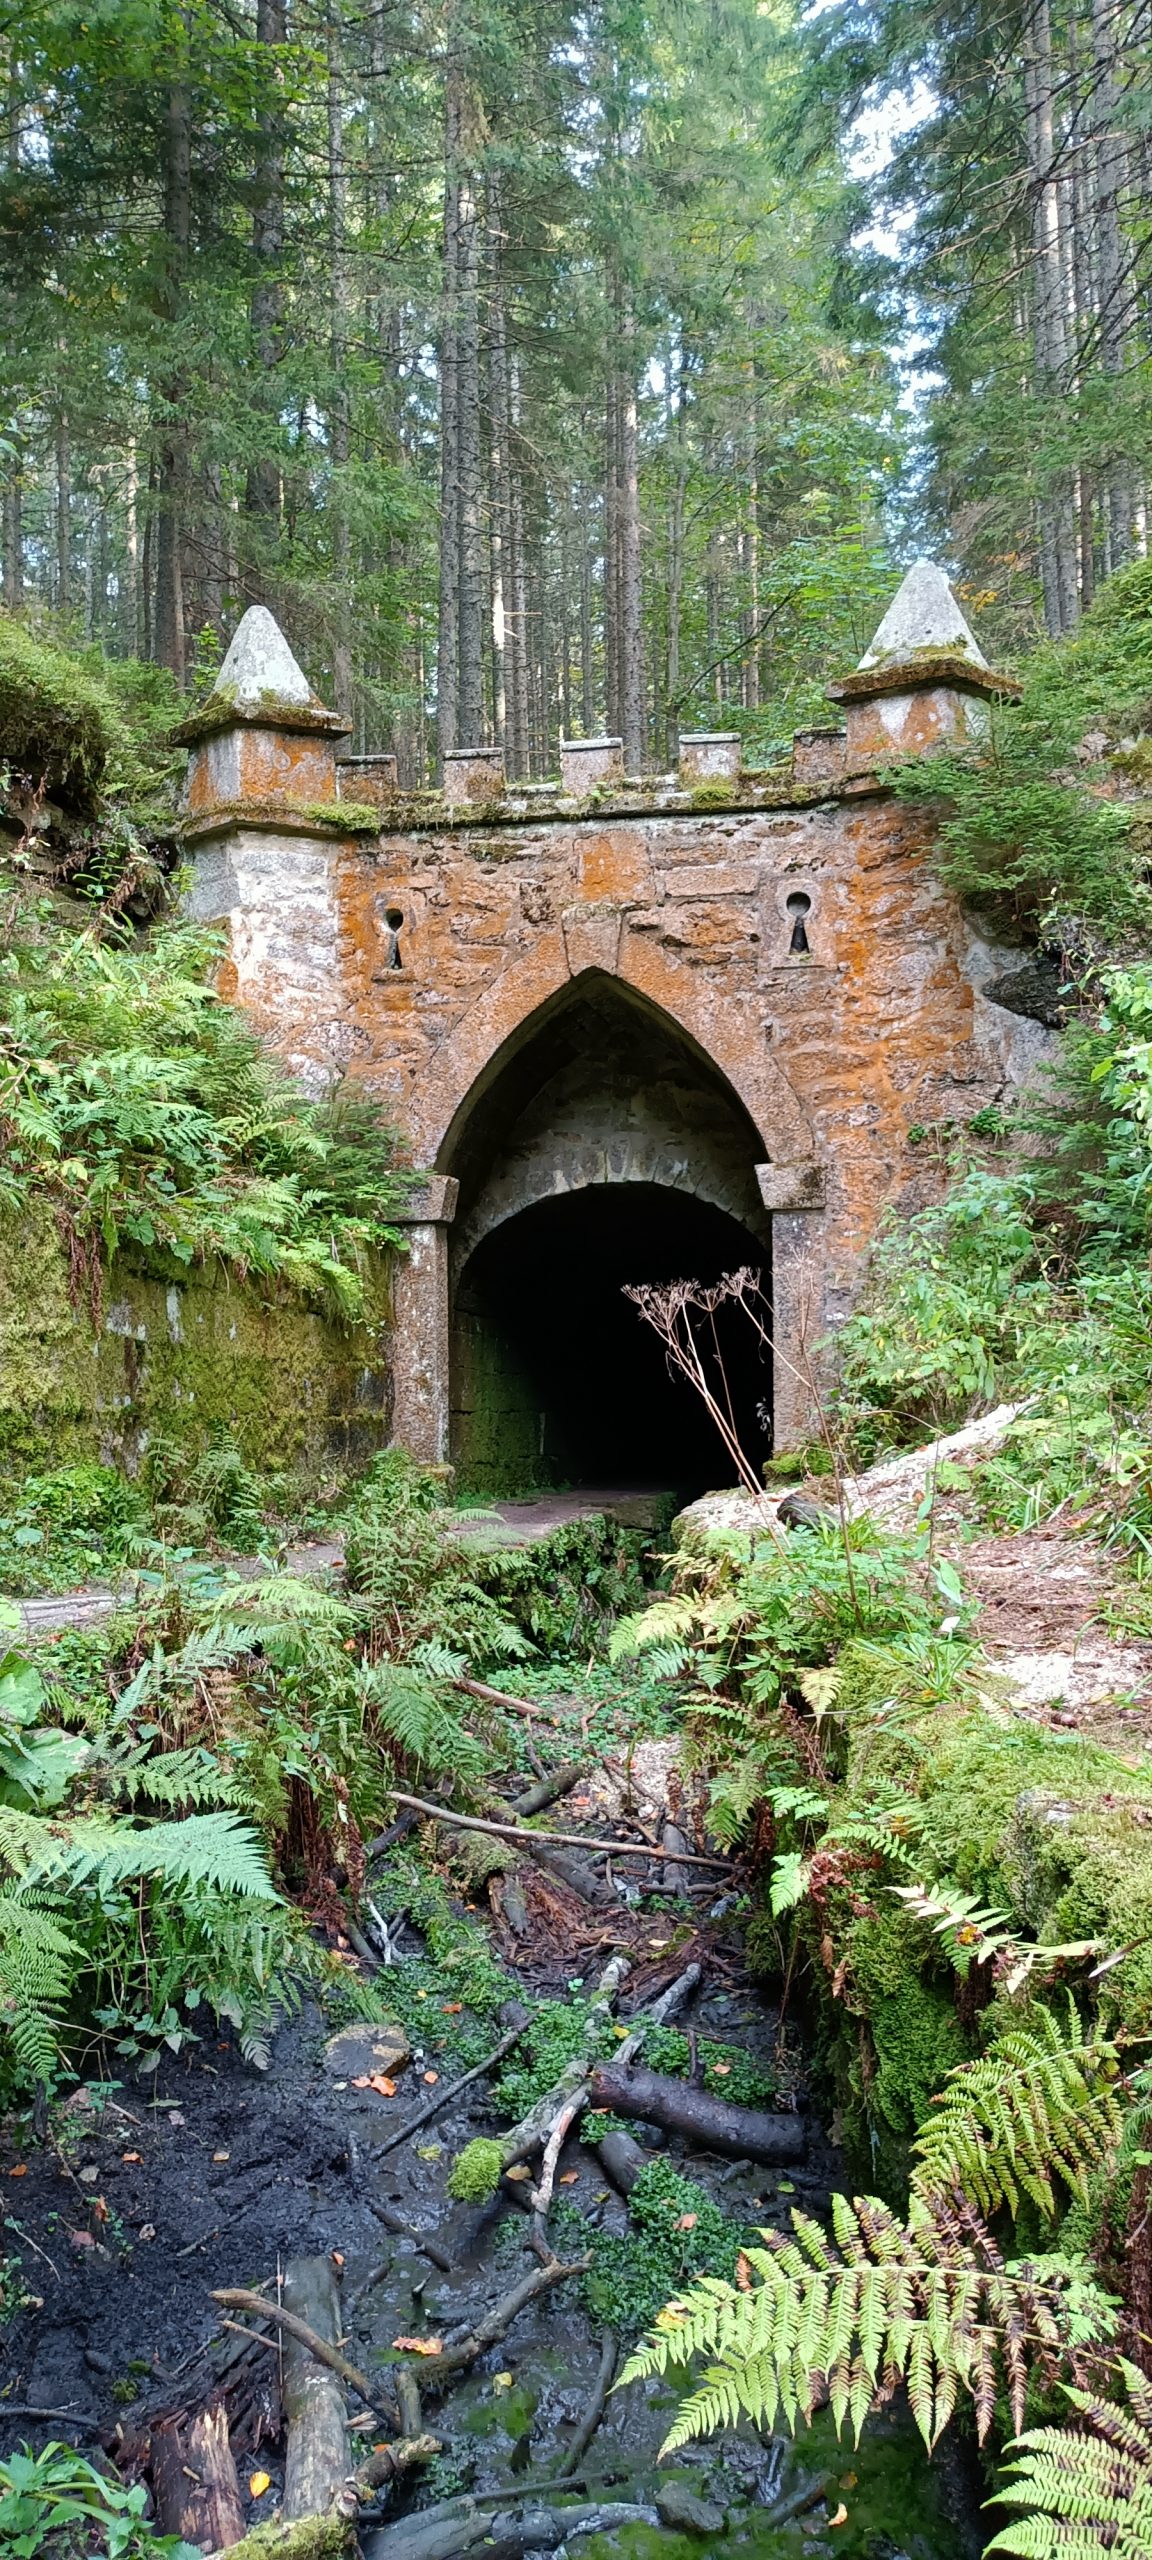 Horní portál plavebního tunelu pohledem z koryta plavebního kanálu.